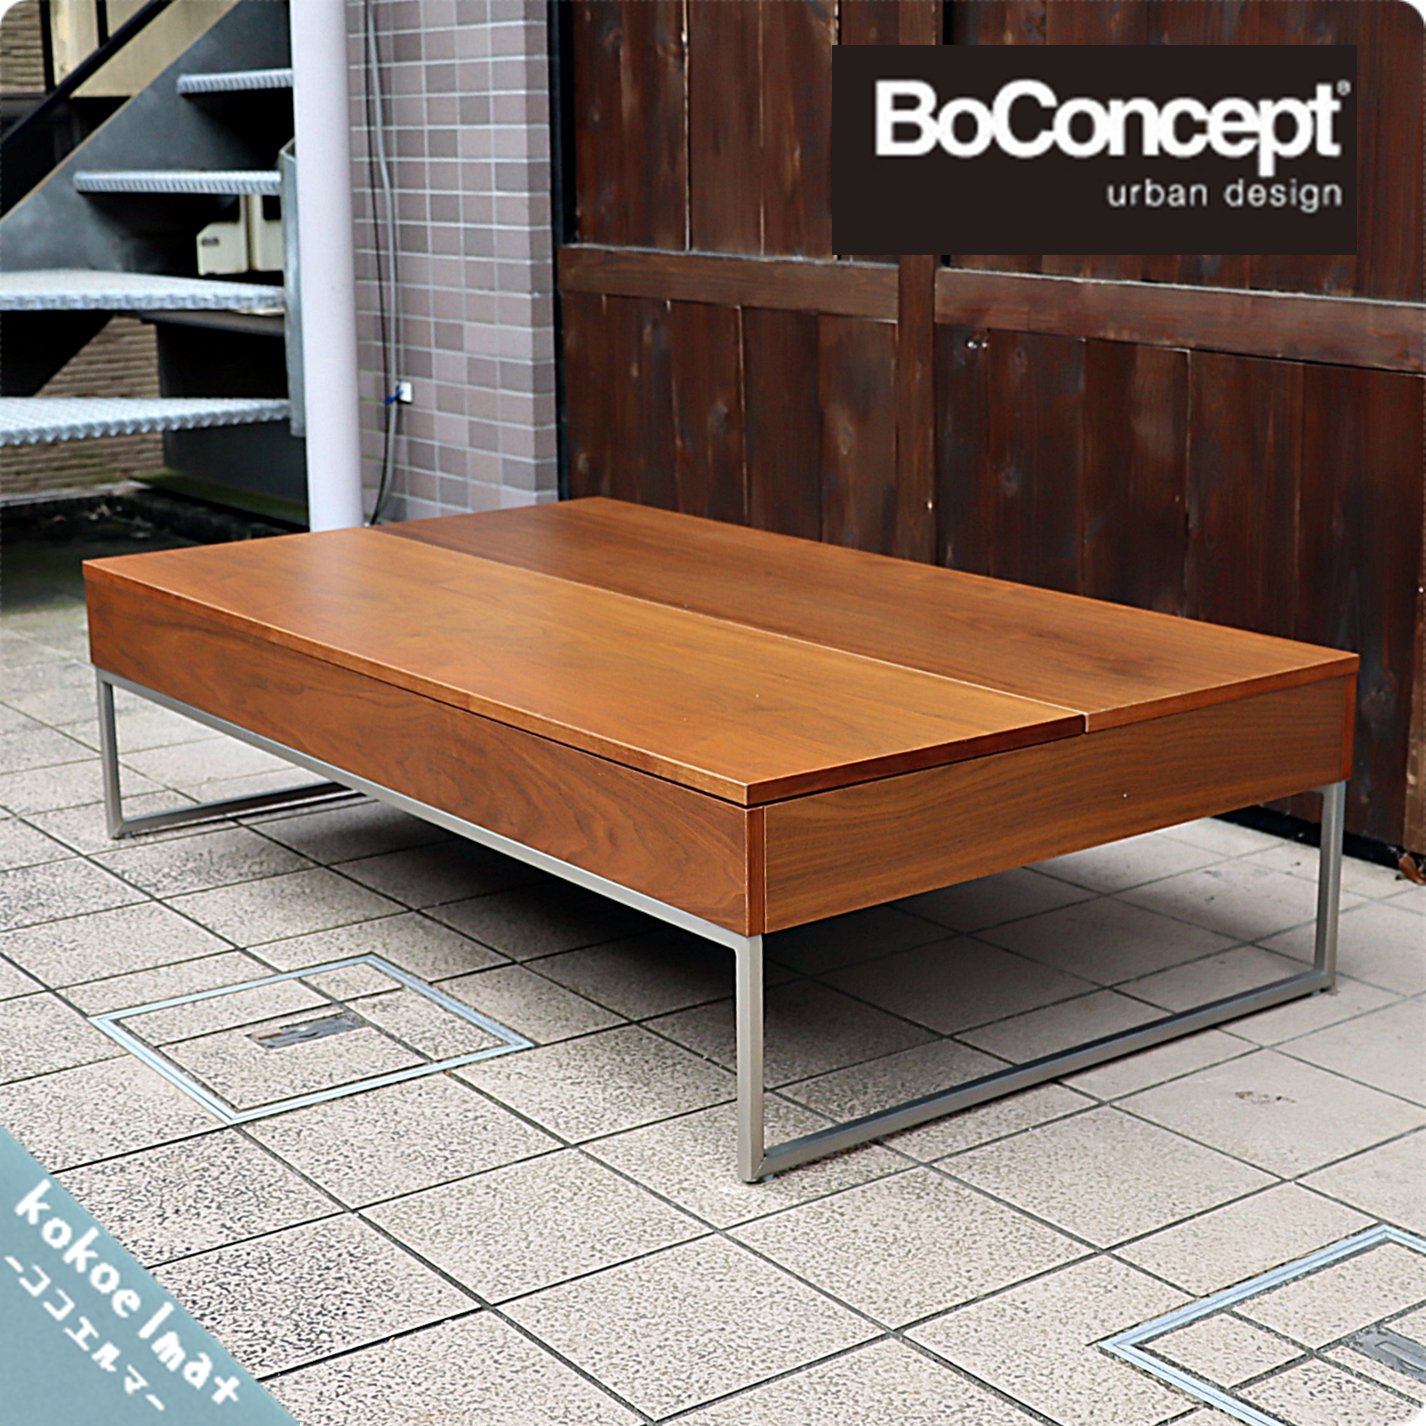 Boconcept ボーコンセプト テーブル 収納付き コーヒーテーブル 家具 